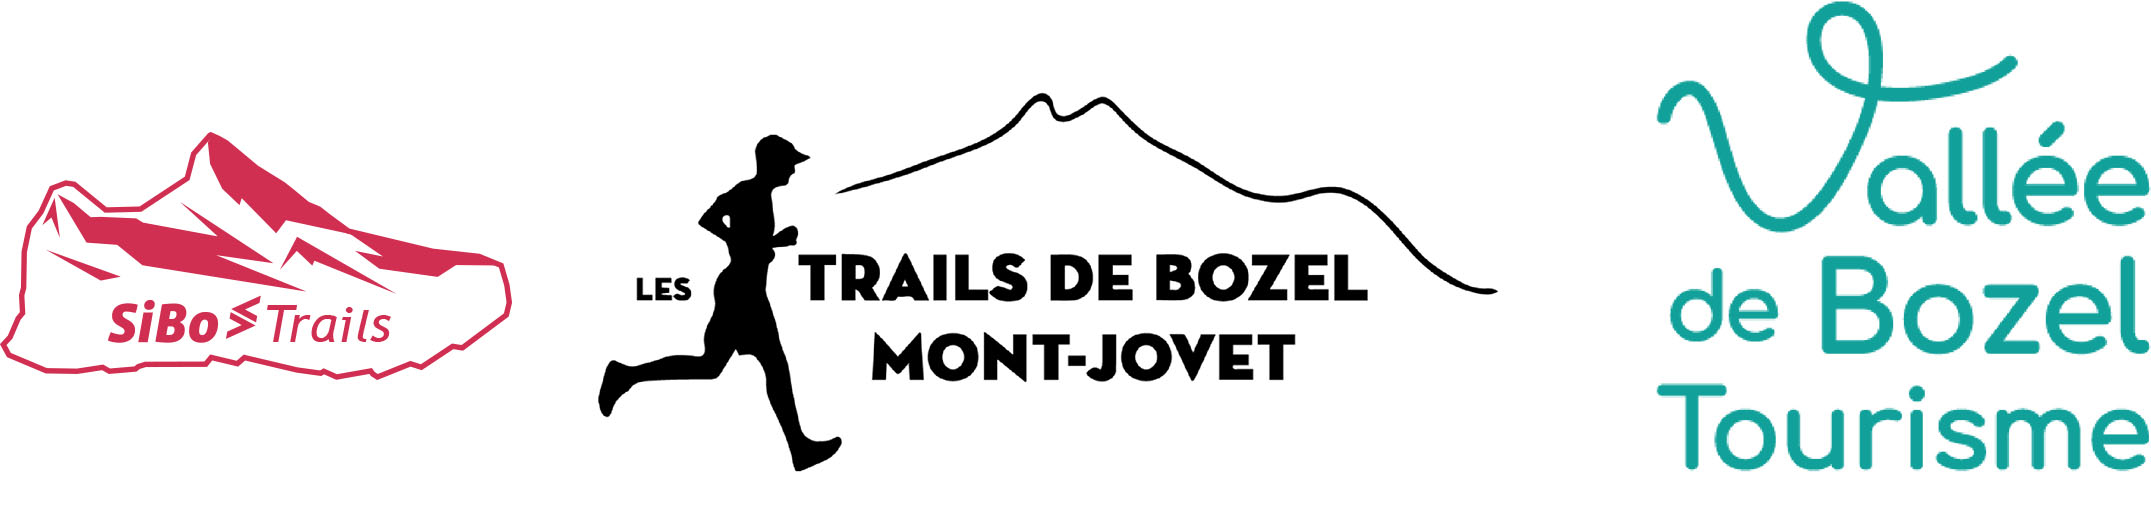 Trails de Bozel Mont-Jovet